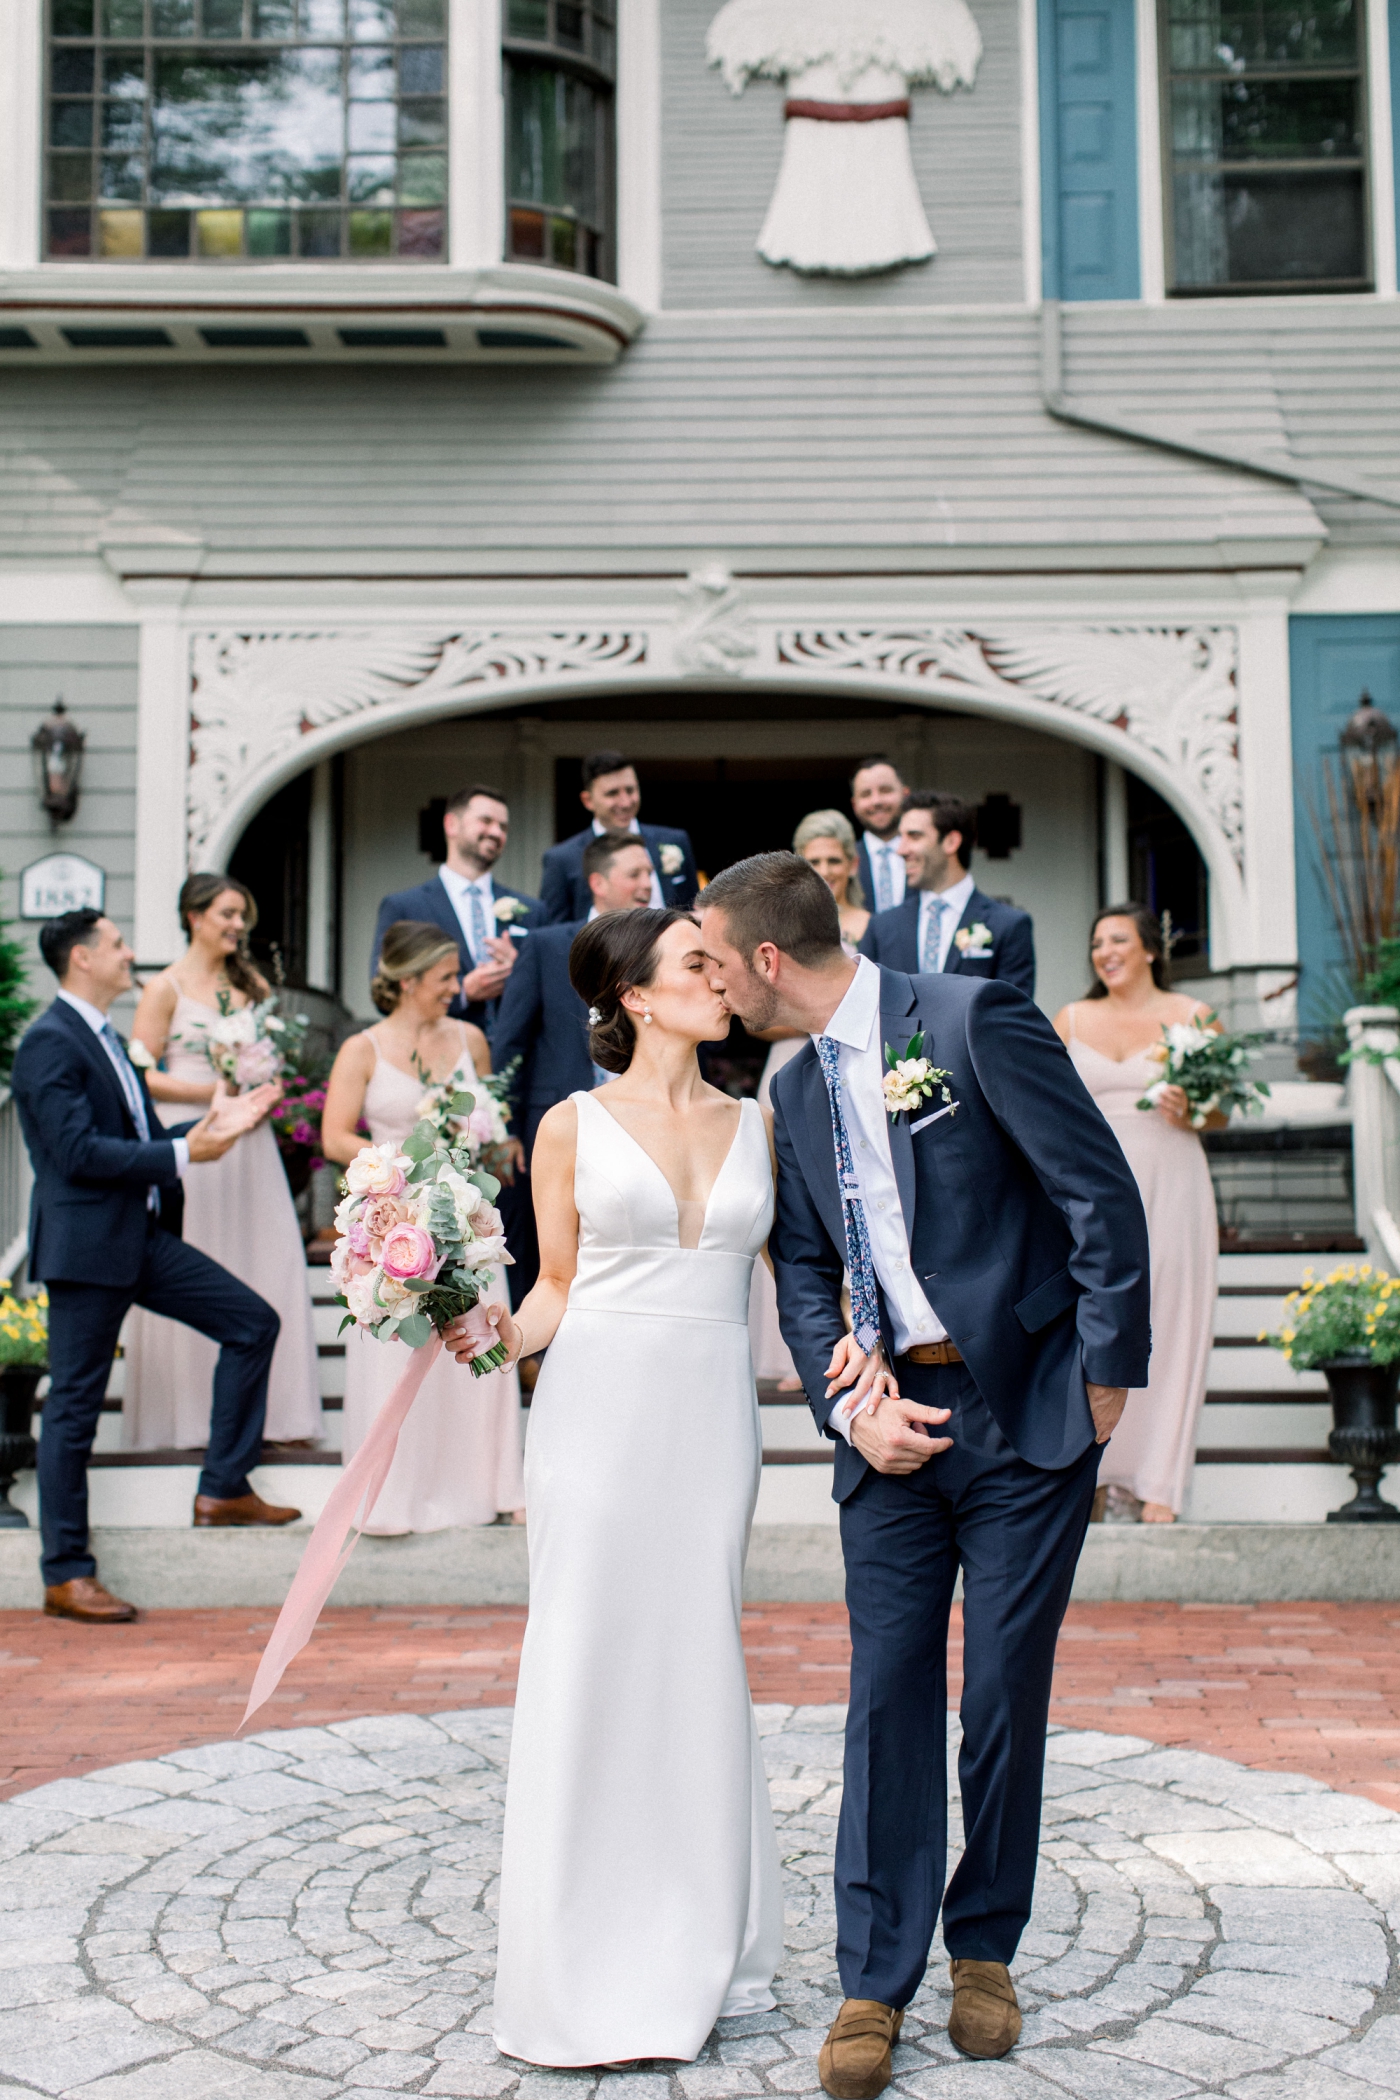 Backyard wedding reception in New England